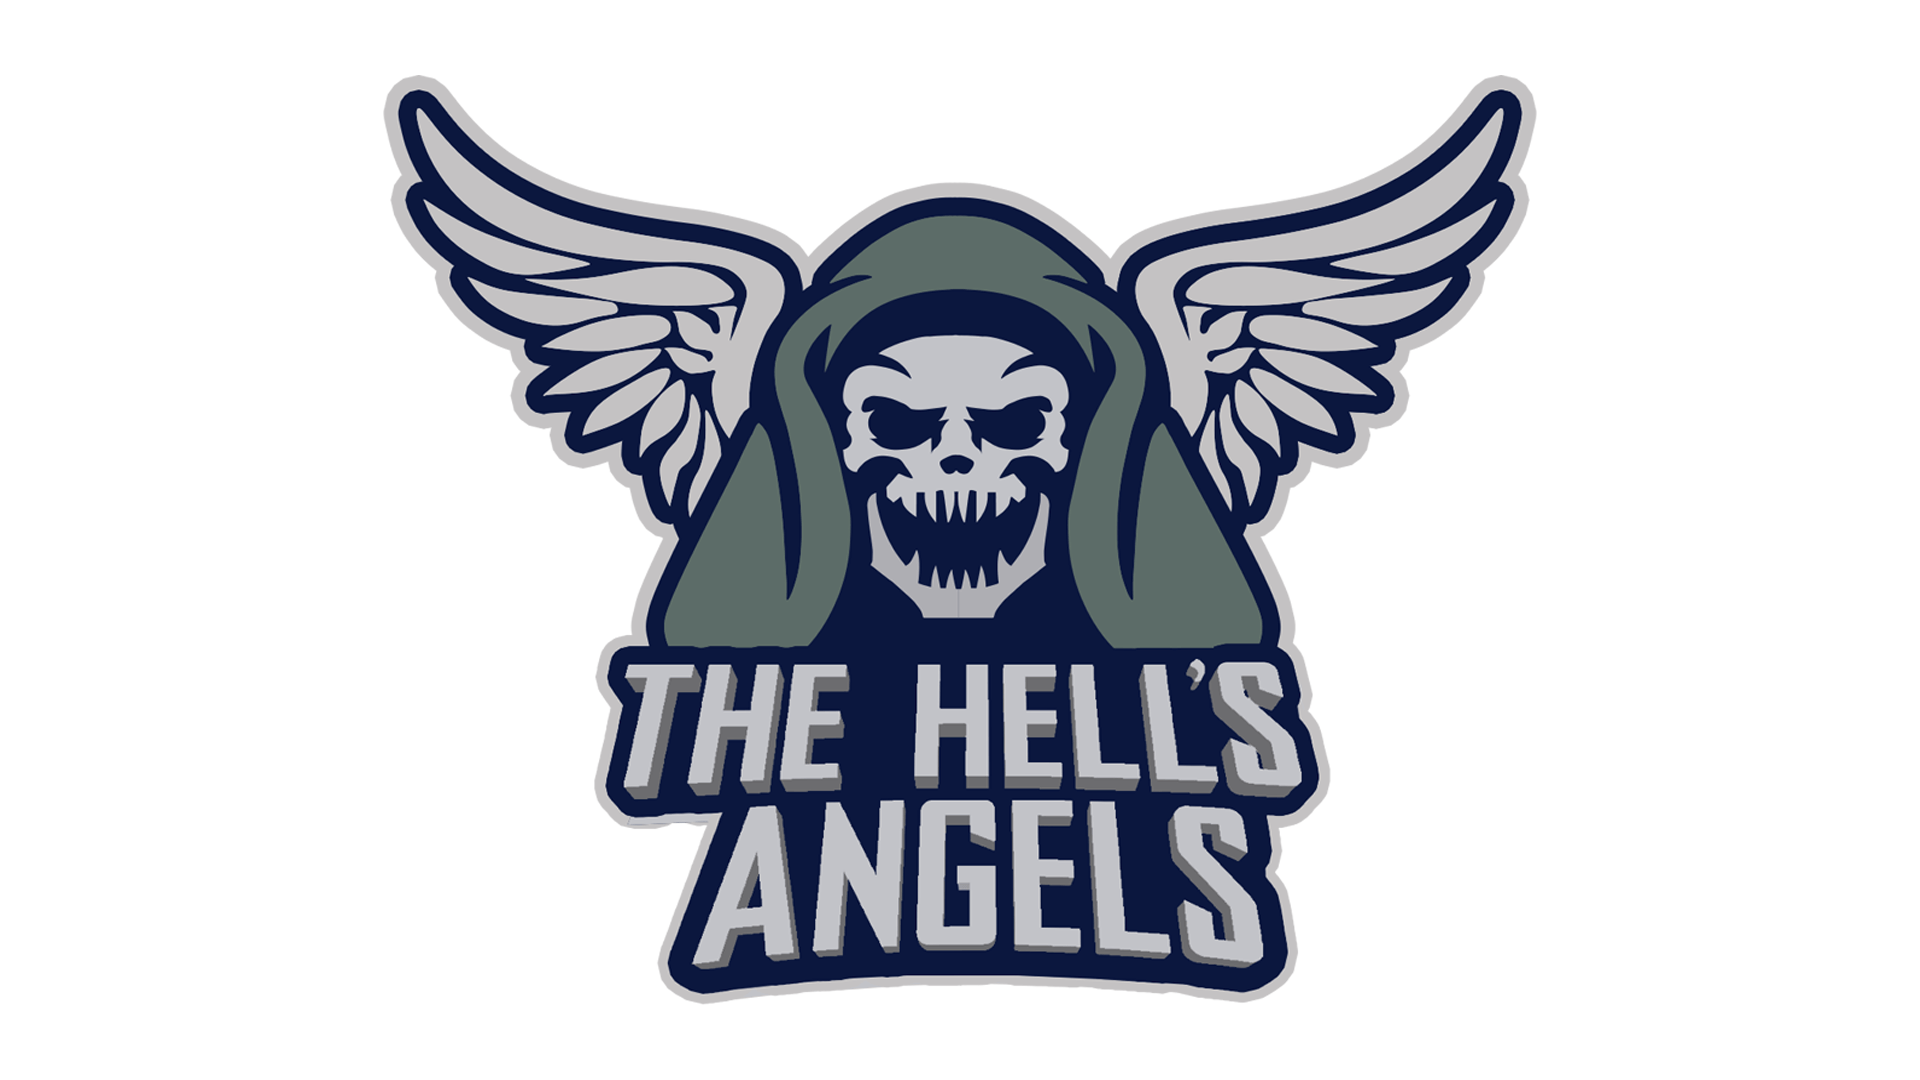 Angel s club. Hells Angels логотип. Ангелы ада логотип. Байкерские логотипы. Самп Hells Angels байкеры.